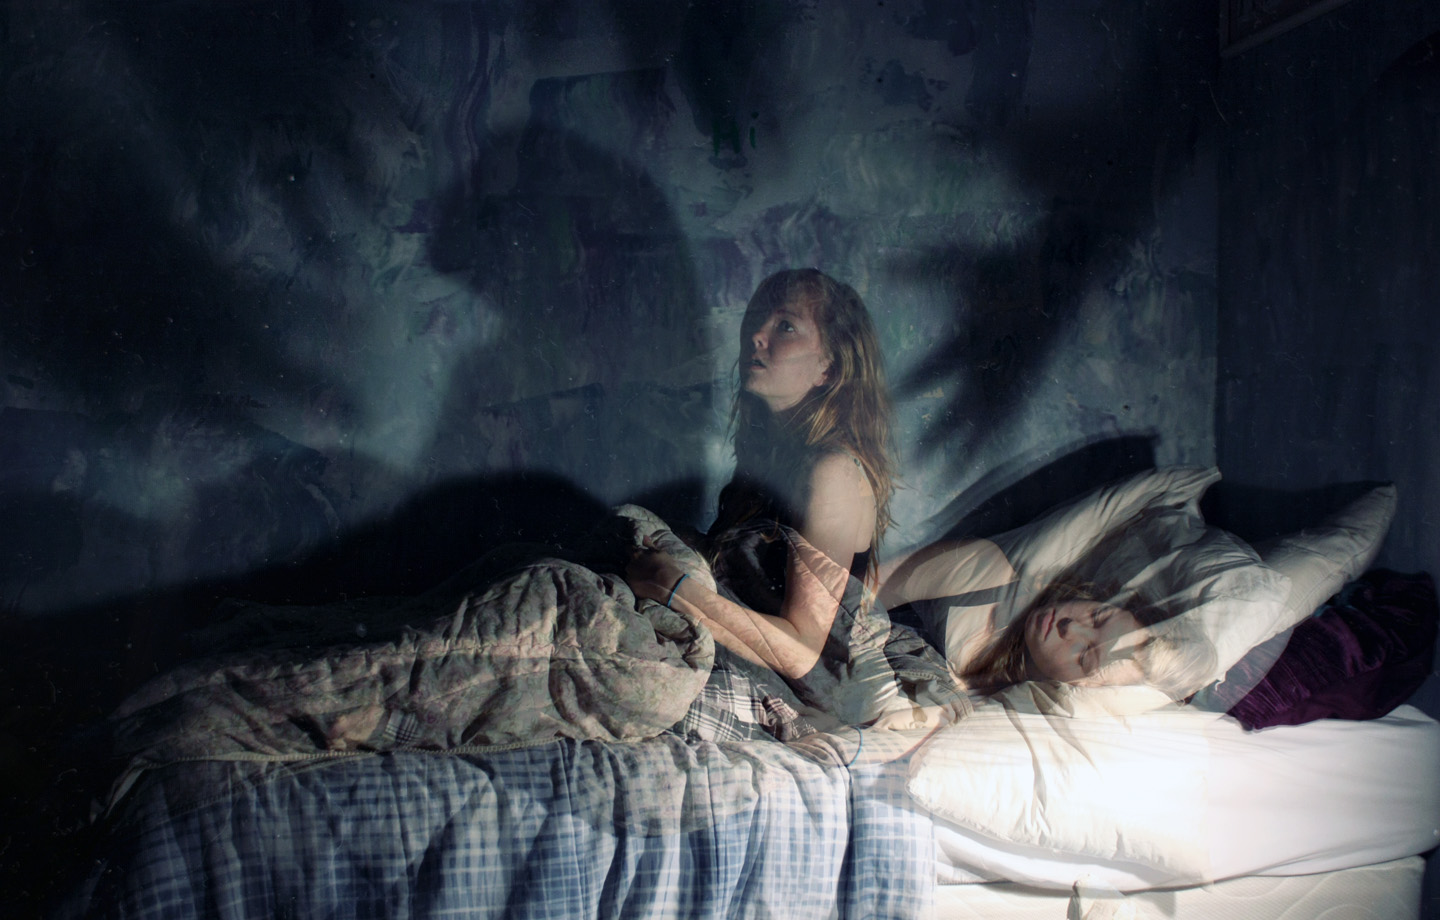 Есть по среди ночи. Ночница Сонный паралич. Ночные кошмары и фантастические видения" 2009 год.